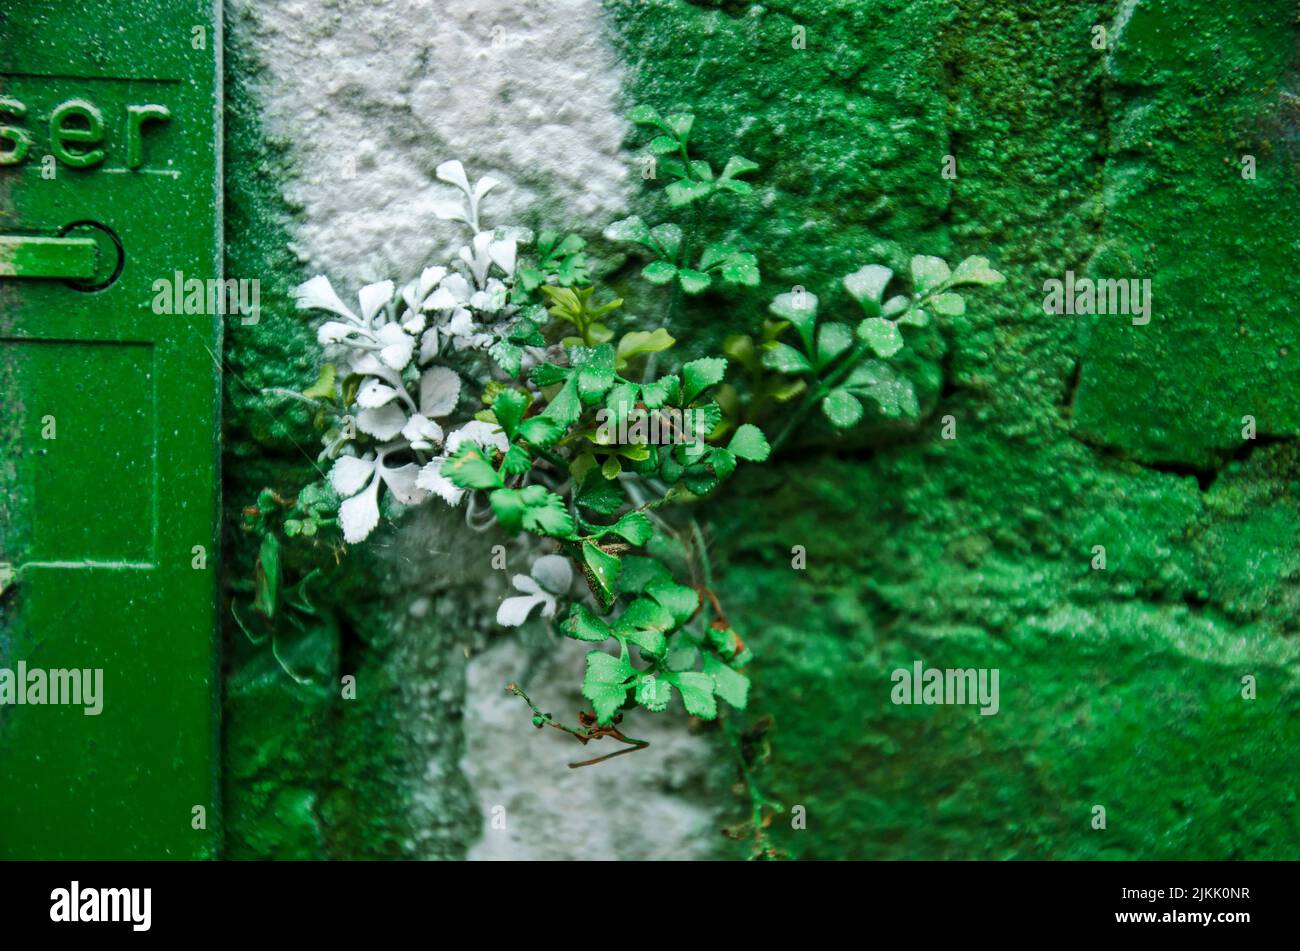 Petite plante poussant dans le mortier dans un mur de brique et récemment pulvérisé (pas par le photographe) dans la peinture verte et blanche Banque D'Images